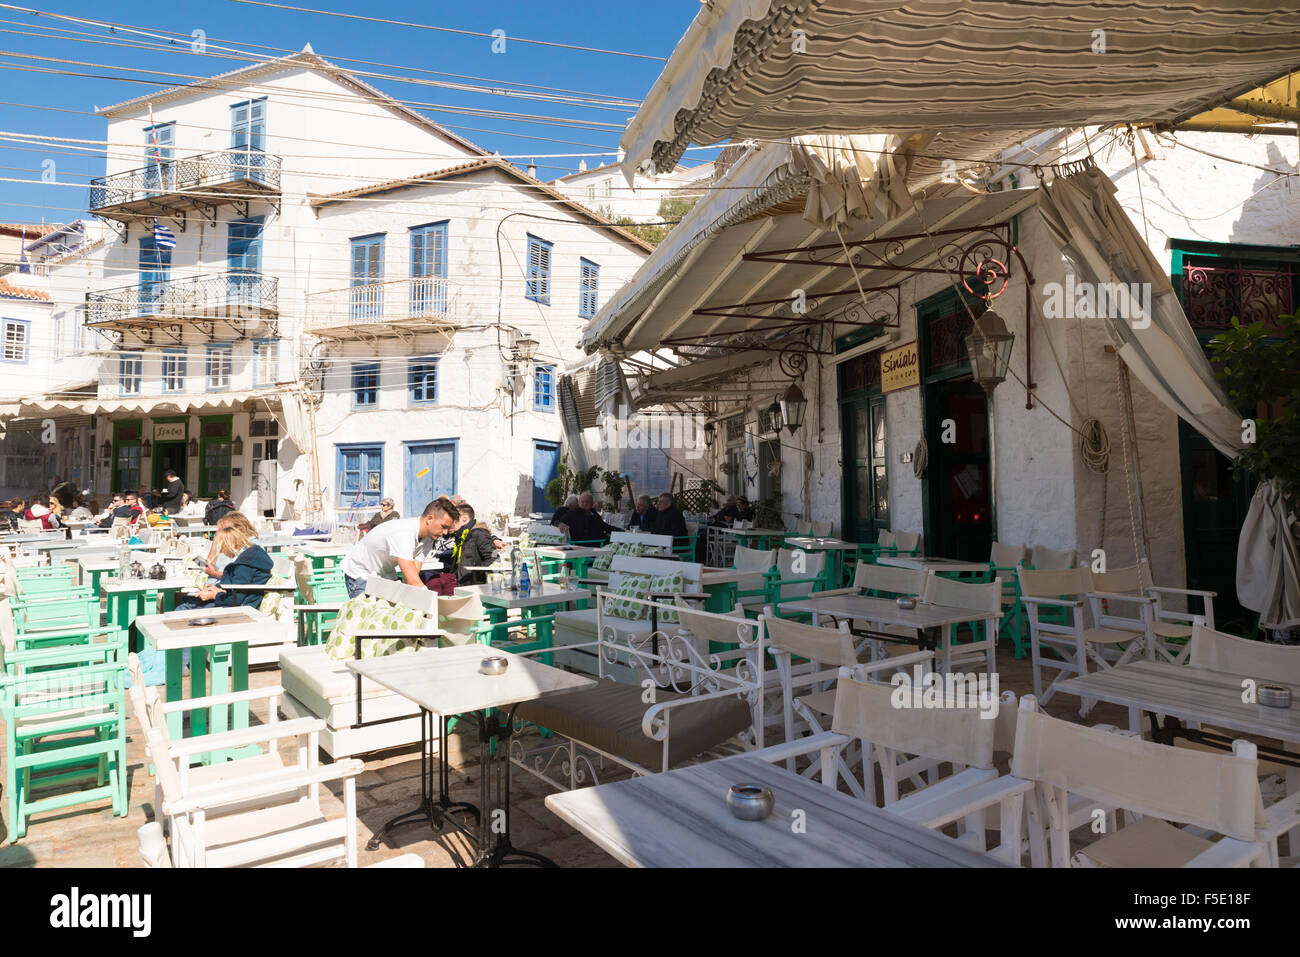 HYDRA, Grecia - 25 ottobre 2015: persone nei terrazzi di caffè sulla banchina del porto di Hydra Foto Stock